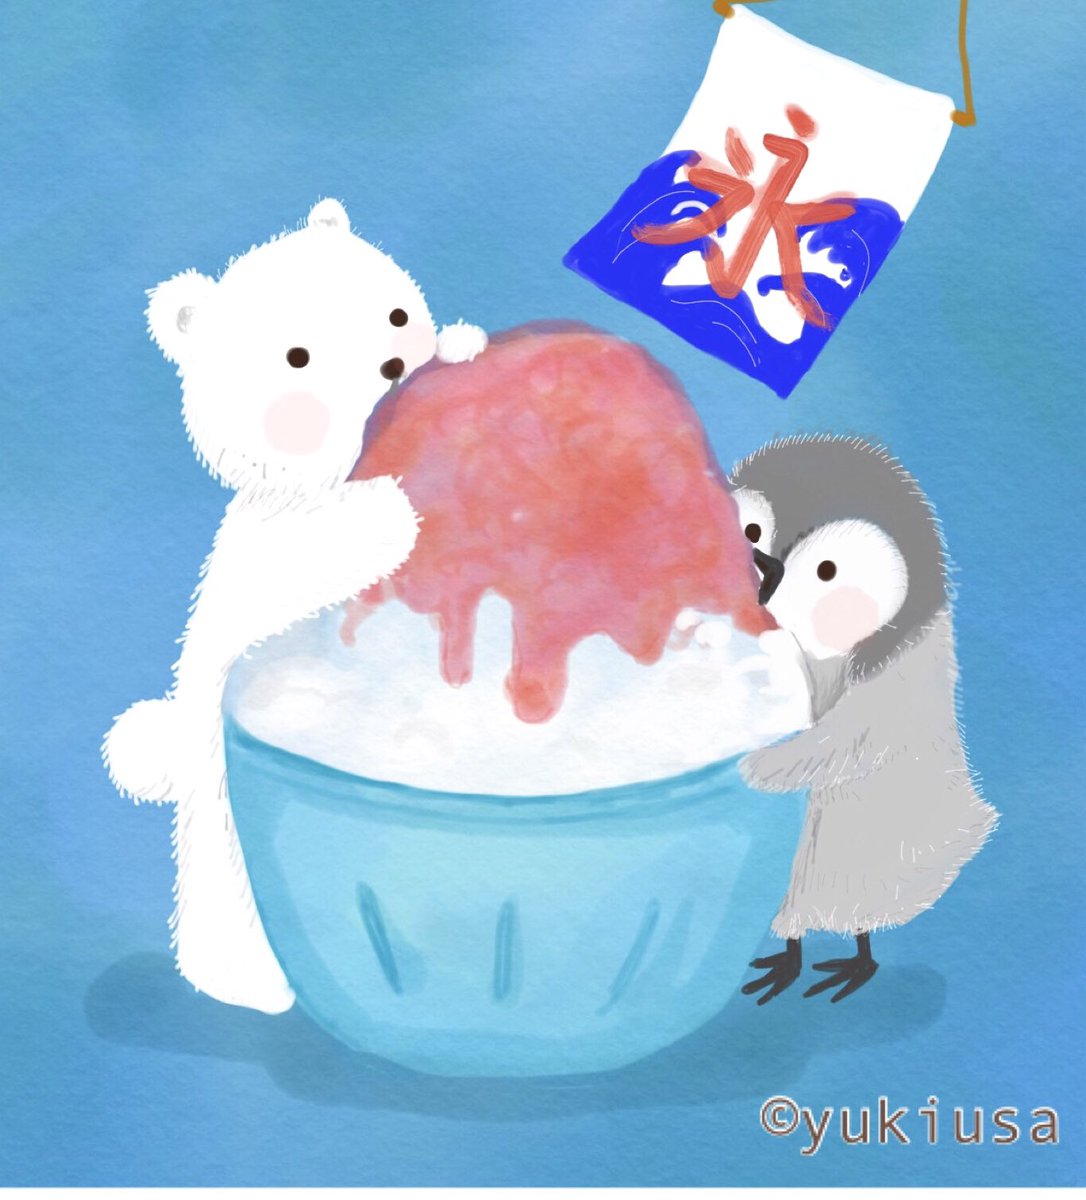 ゆきうさ Twitter પર お客様 お待たせいたしました いちごかき氷です 暑いので 味見させてくれますか ʕ ᴥ ʔ イラスト かき氷 しろくま ペンギン Illustration Illustrator Penguin Polarbear T Co 2pn2fkjlos